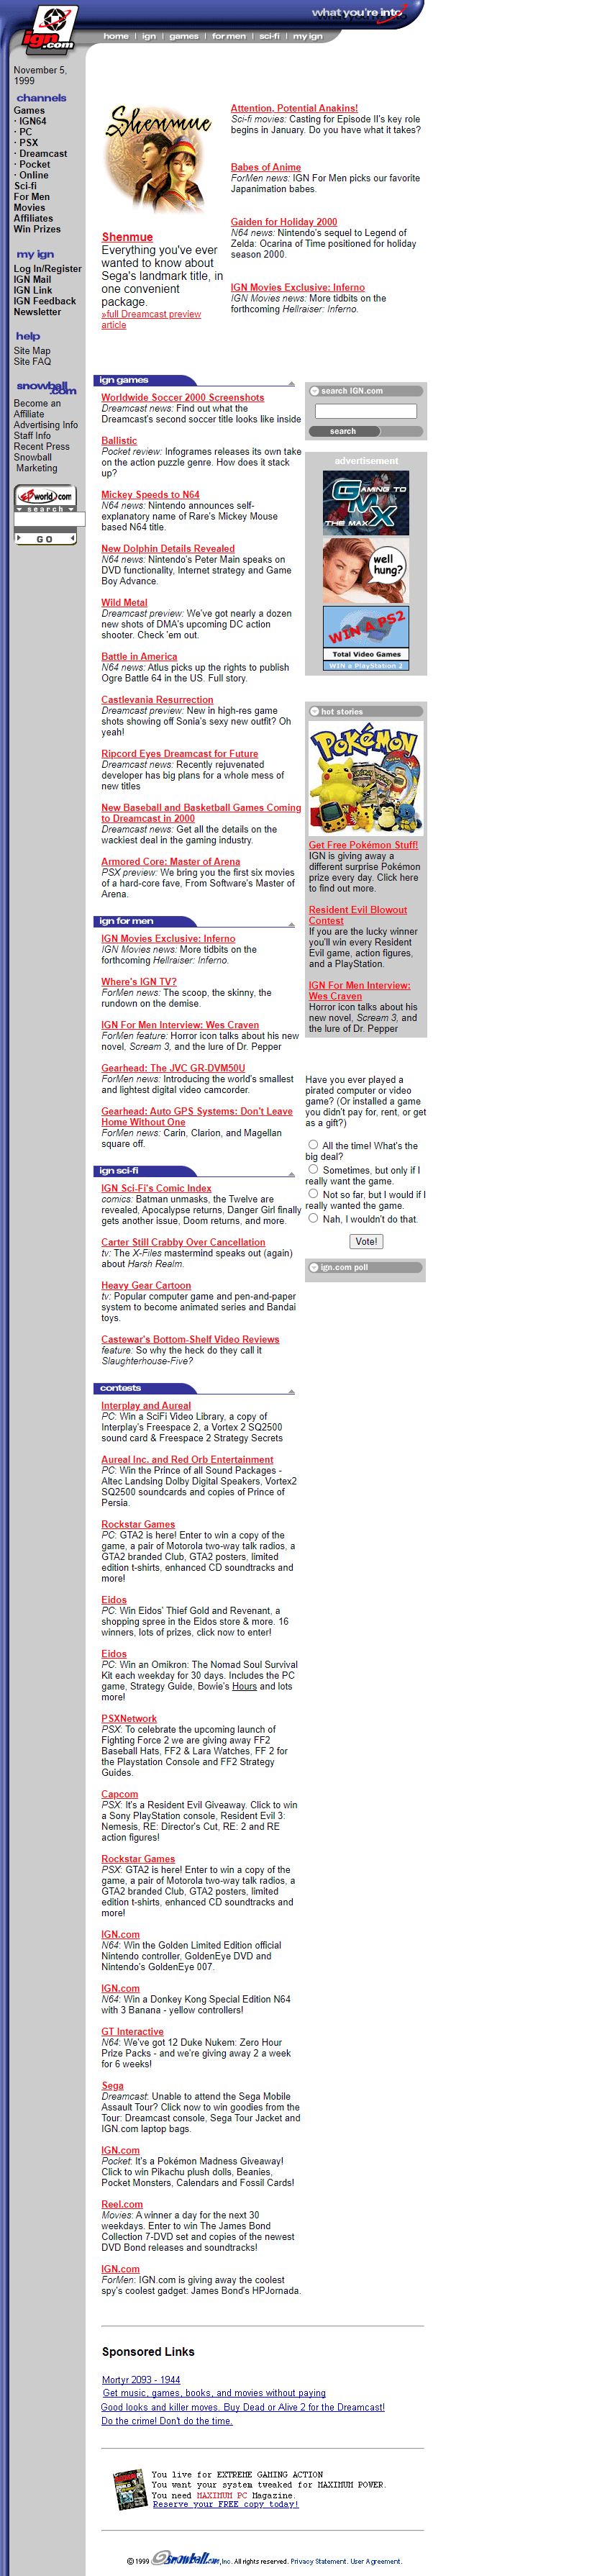 IGN website in 1999